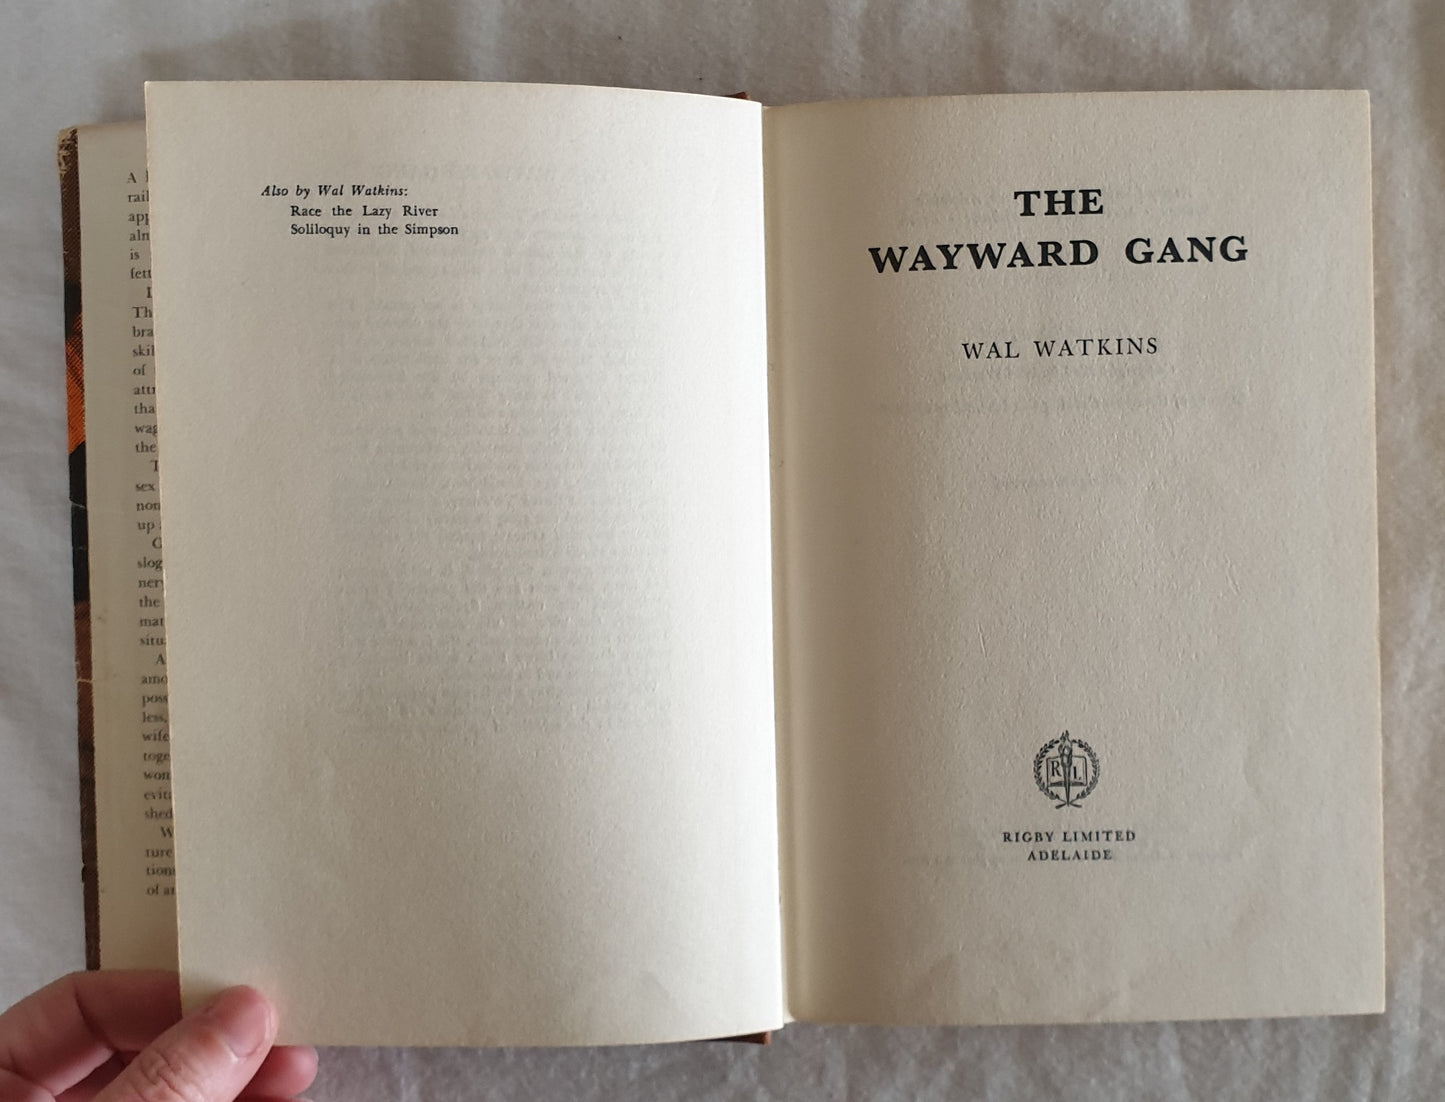 The Wayward Gang by Wal Watkins